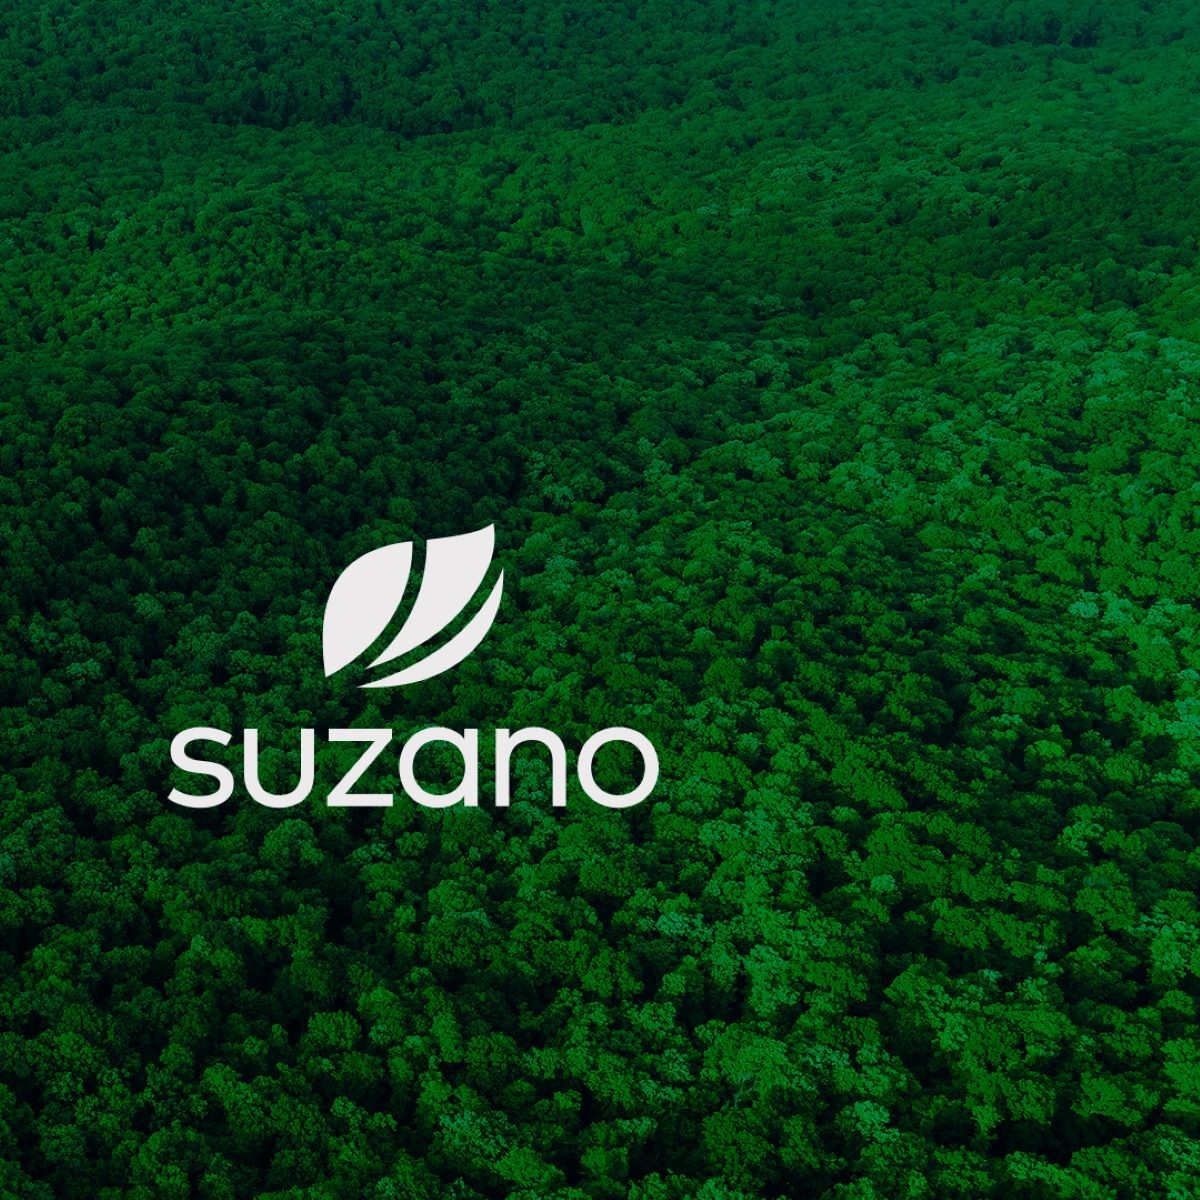 Suzano trabalha na plantação de eucalipto para produção de celulose e papel. Foto: Reprodução/Facebook